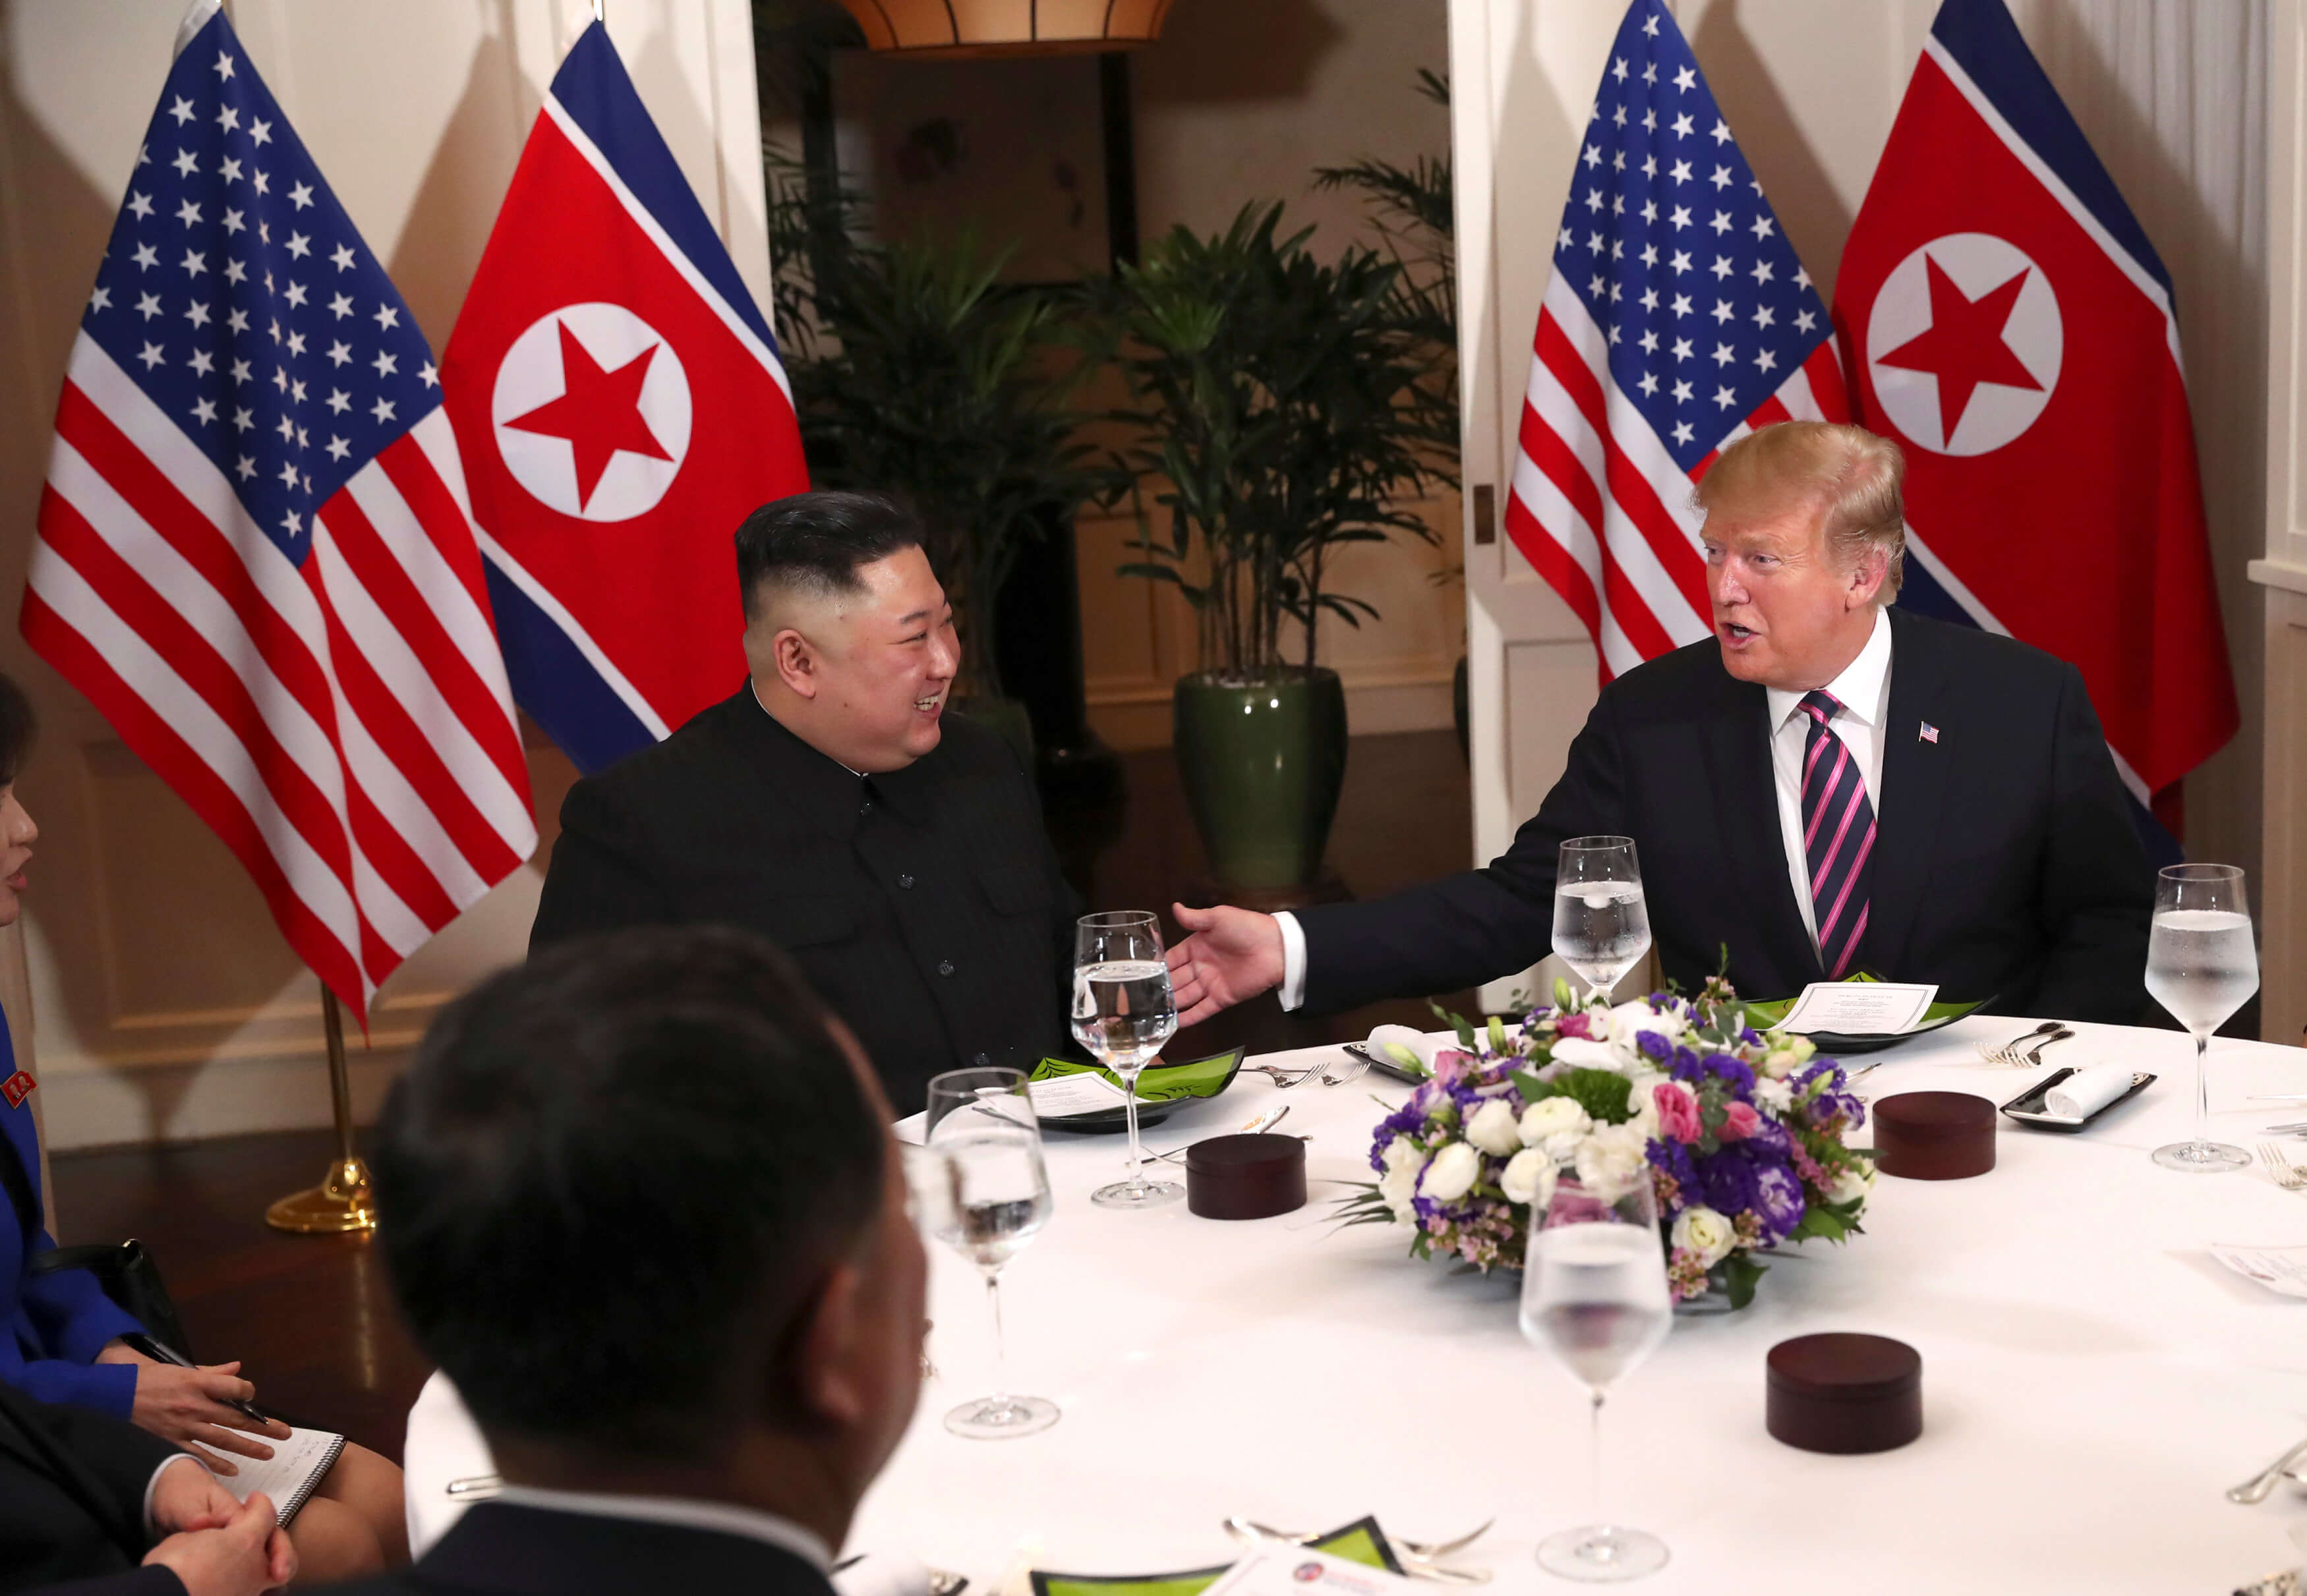 Foto: El presidente de Estados Unidos, Donald Trump, se reúne con el líder norcoreano, Kim Jong-un, en Hanoi, Vietnam el 27 de febrero de 2019